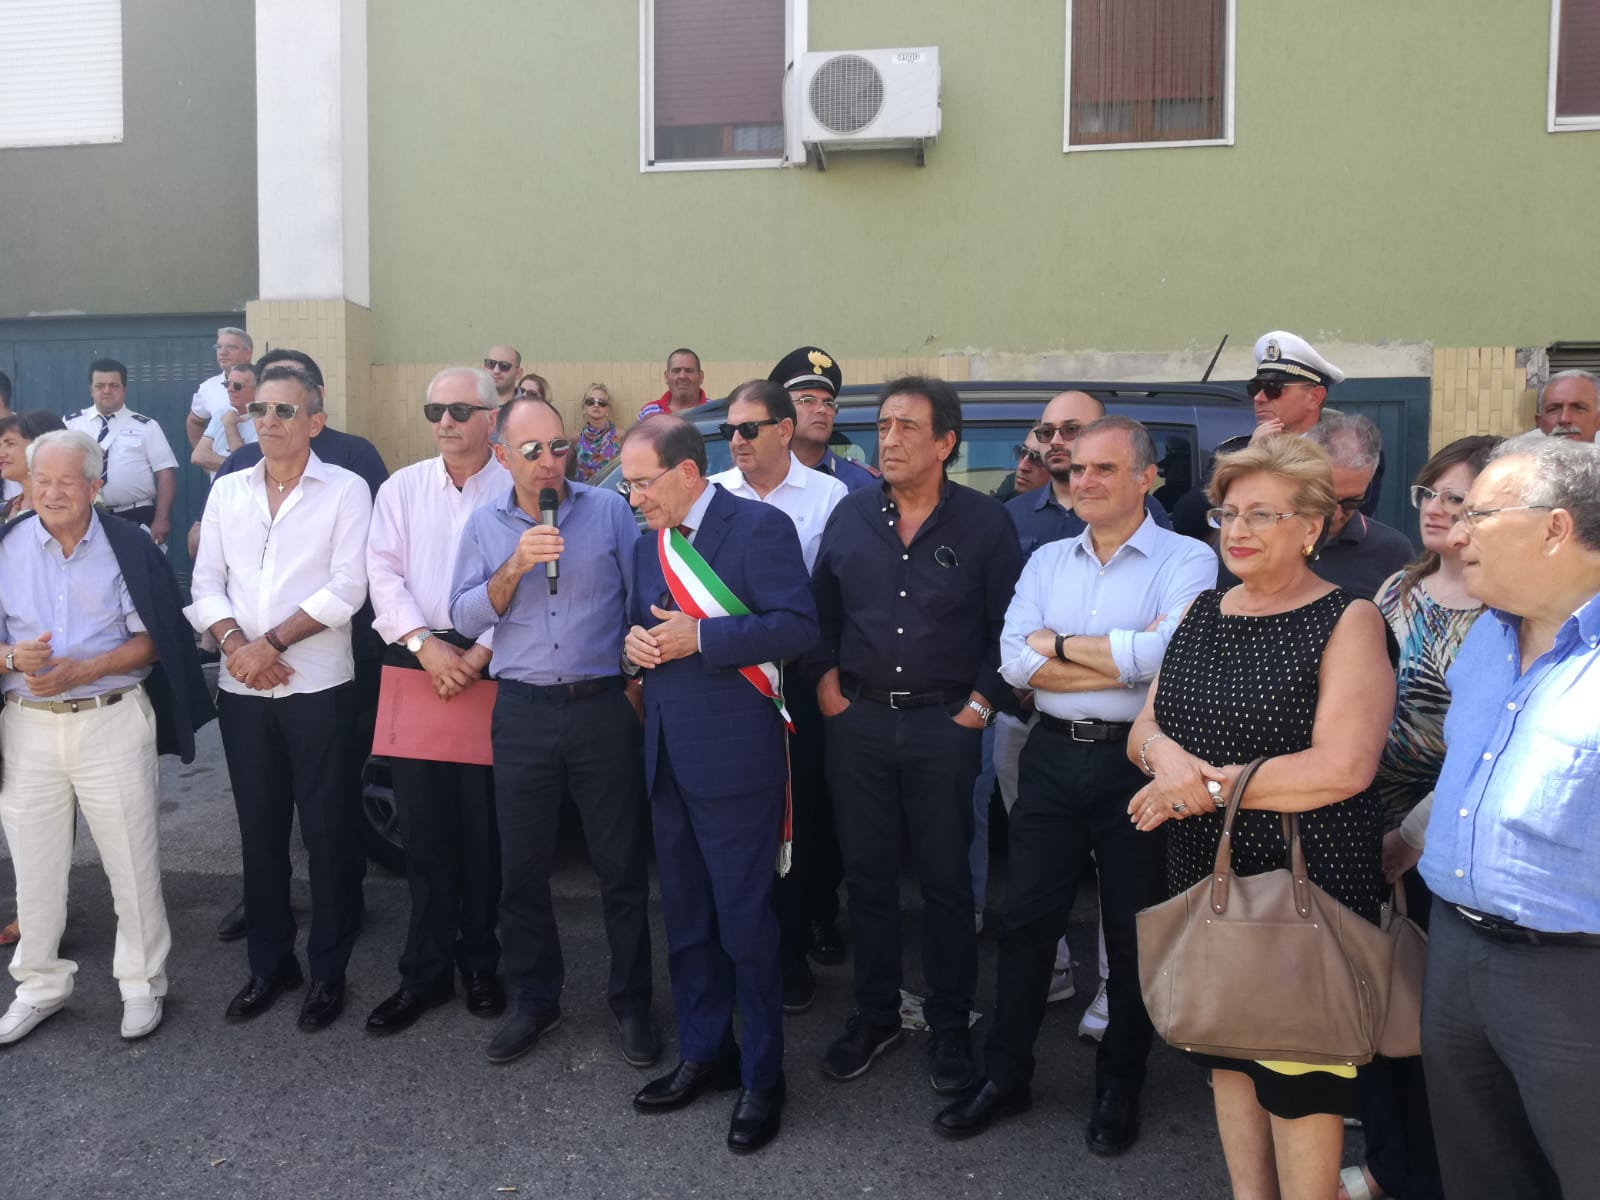 ASP Catania - inaugurazione rsa ramacca - 07.08.2019 (3)